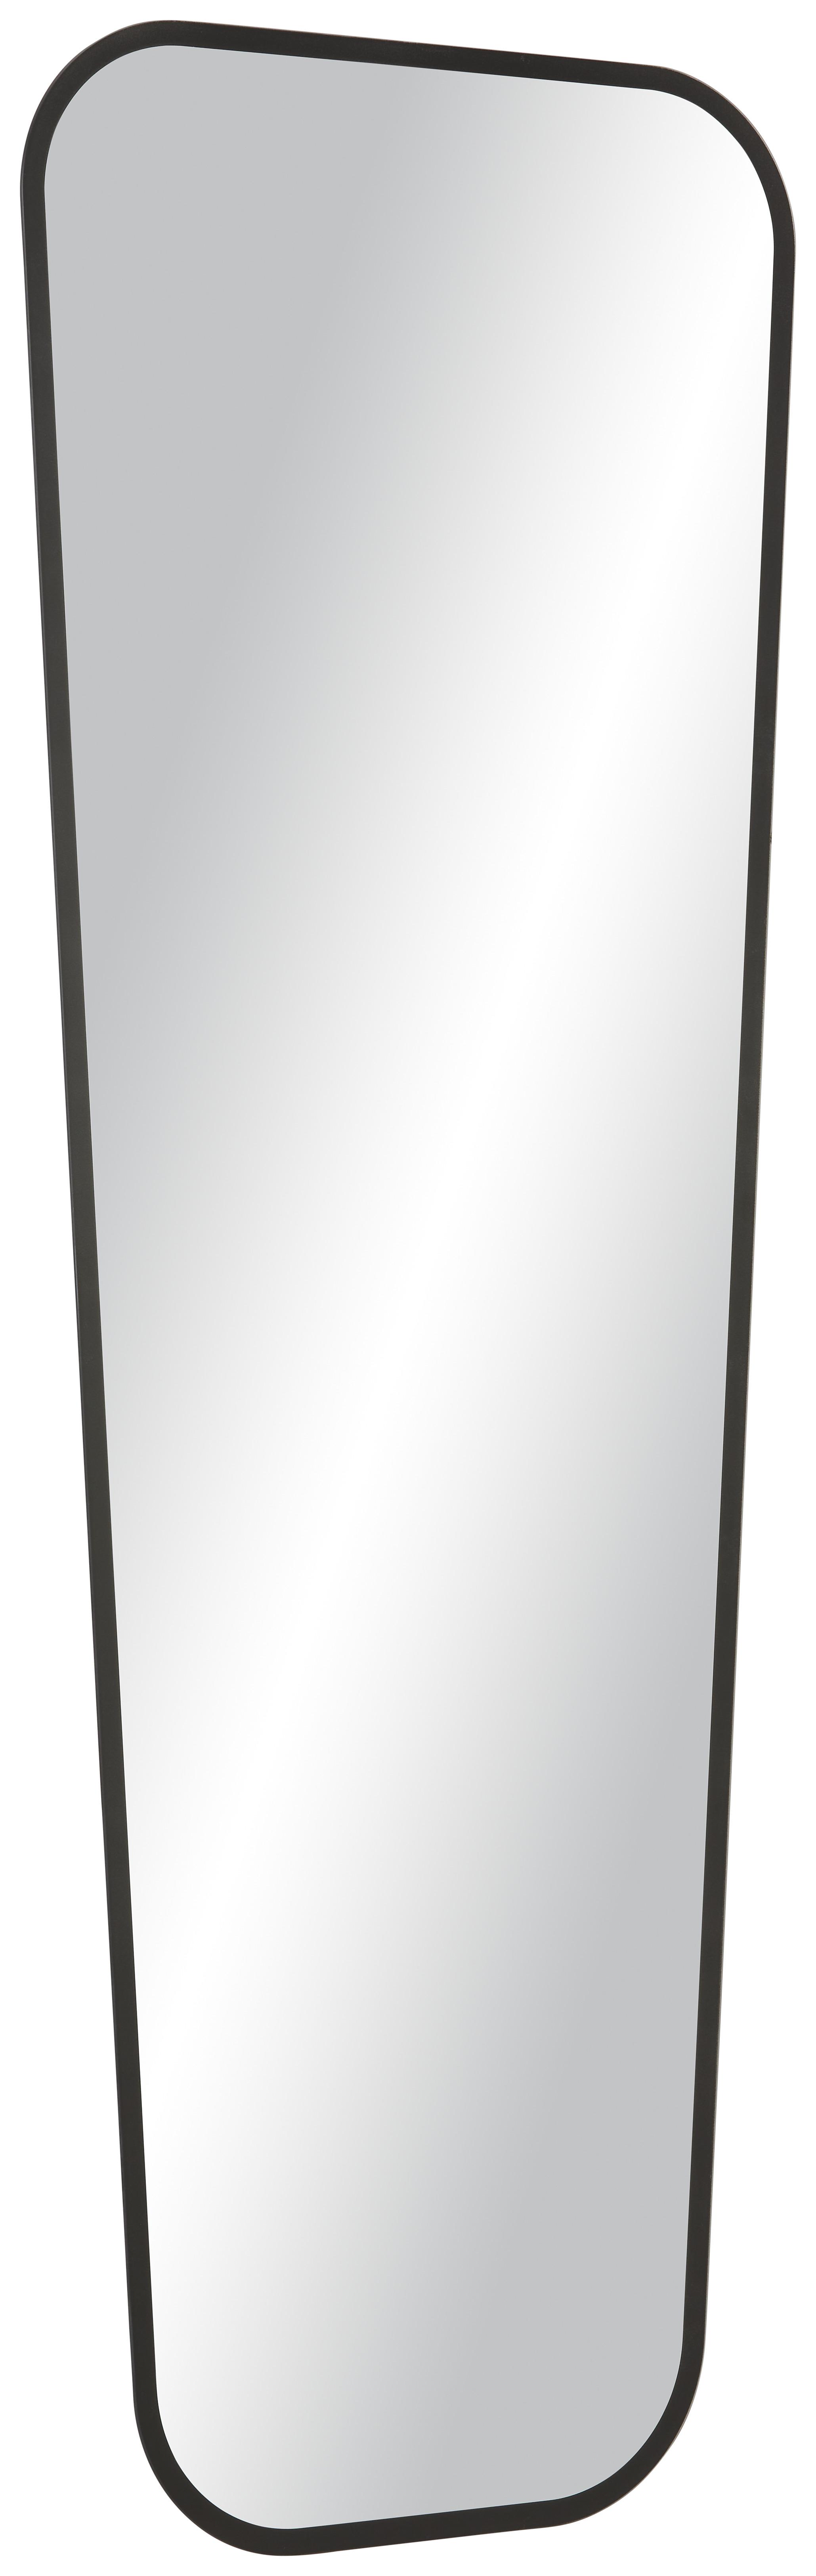 Spiegel in Schwarz - MODERN, Glas (50/140cm) - Modern Living